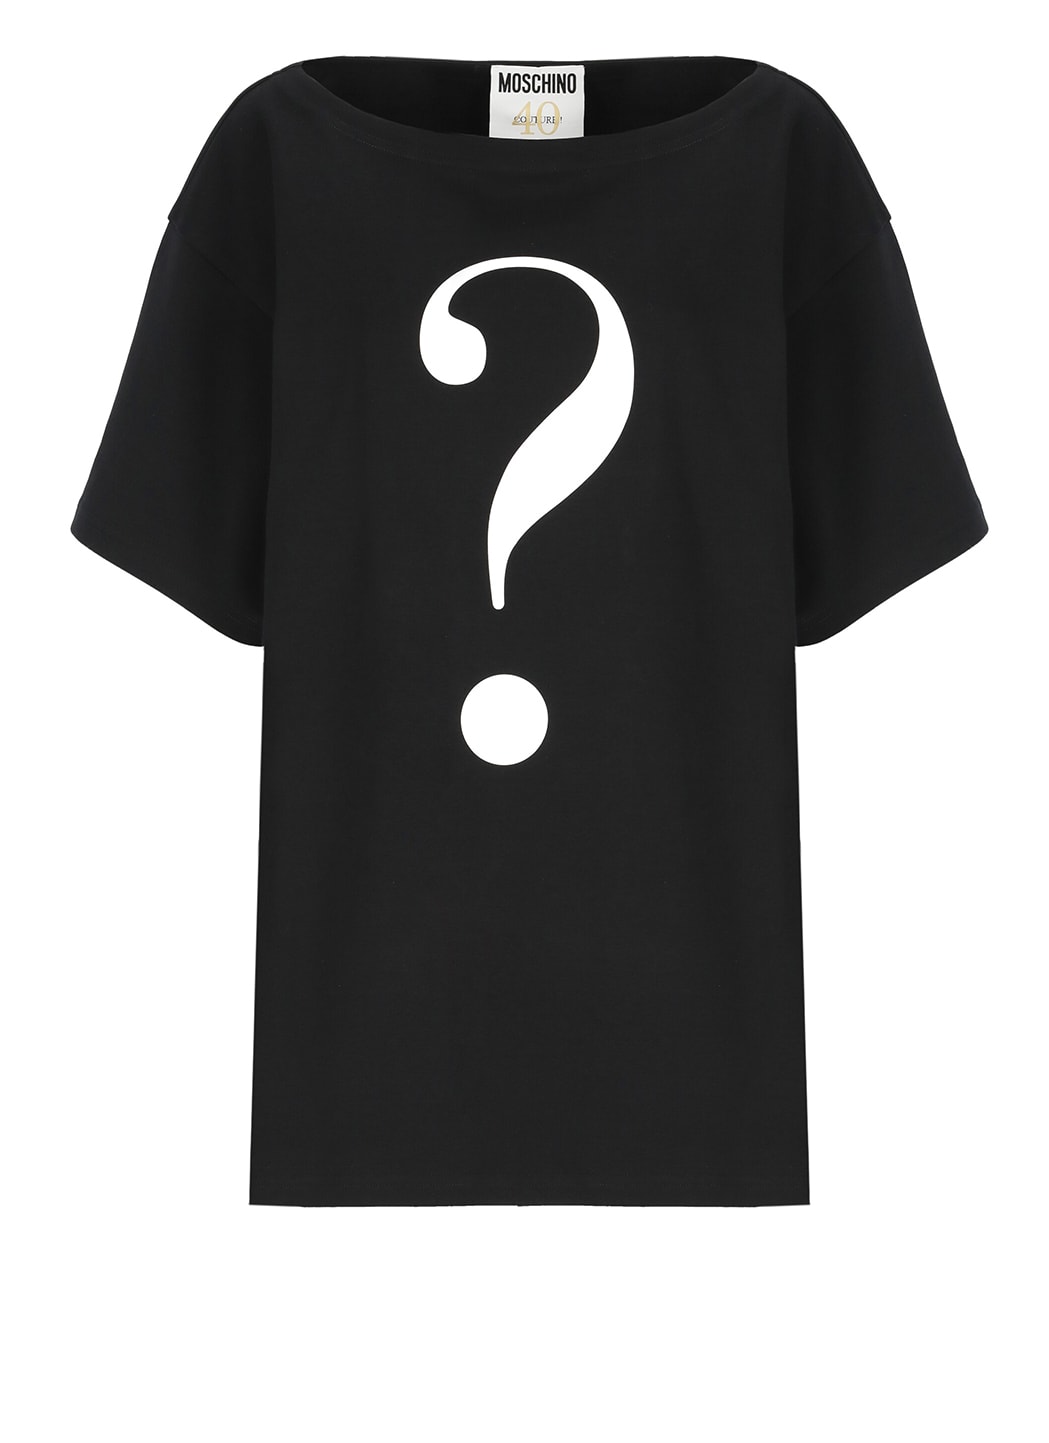 Question Mark T-shirt